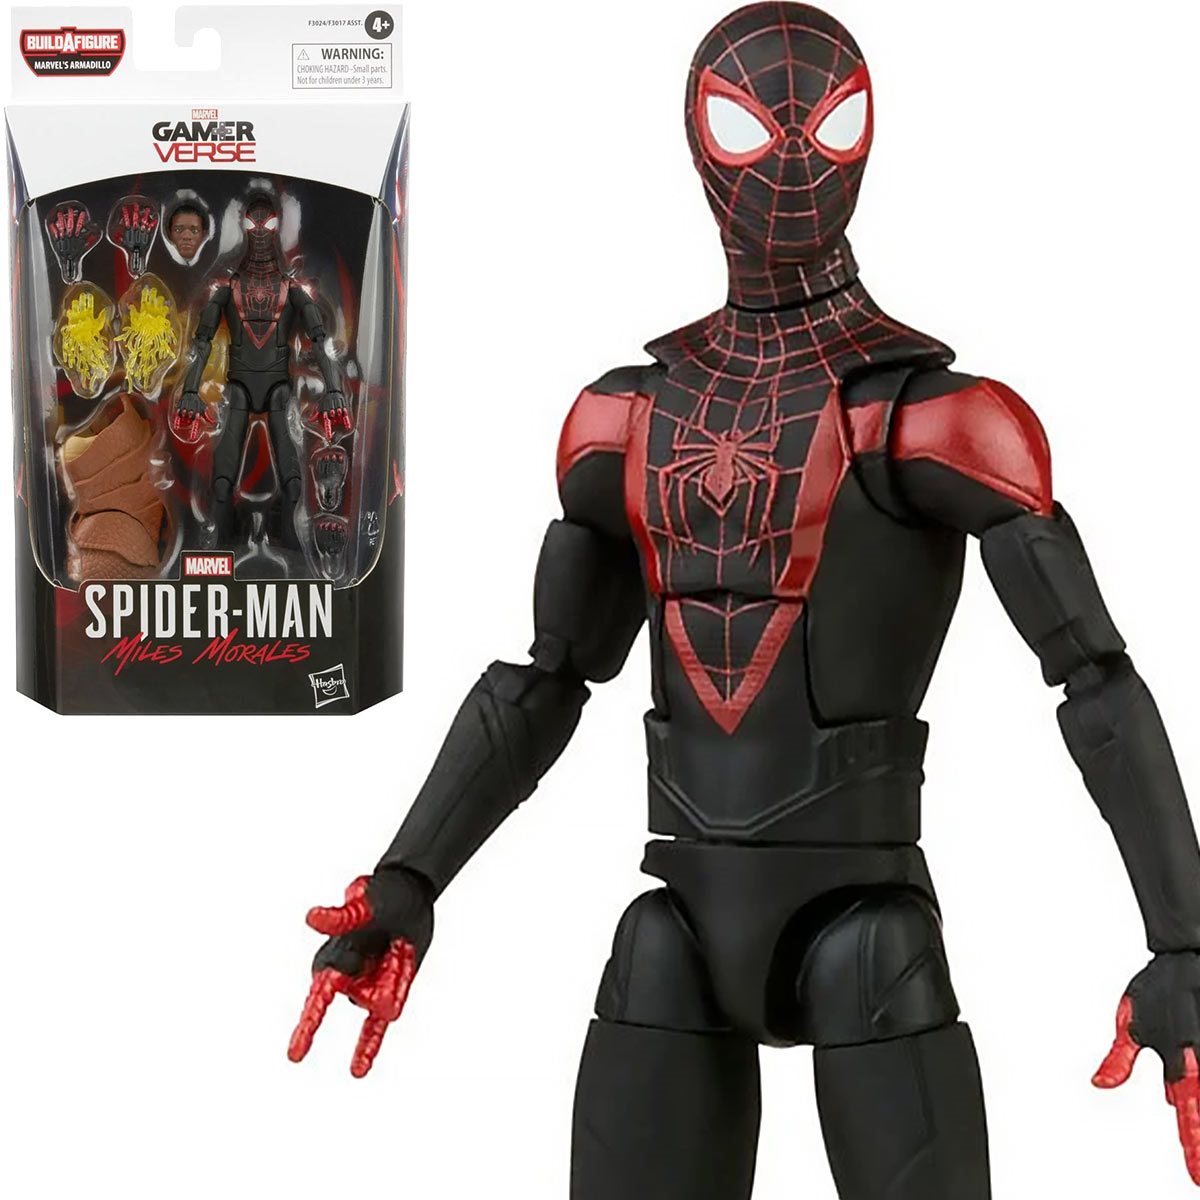 Spider-Man Marvel Legends Miles Morales 6-Inch Action Figure